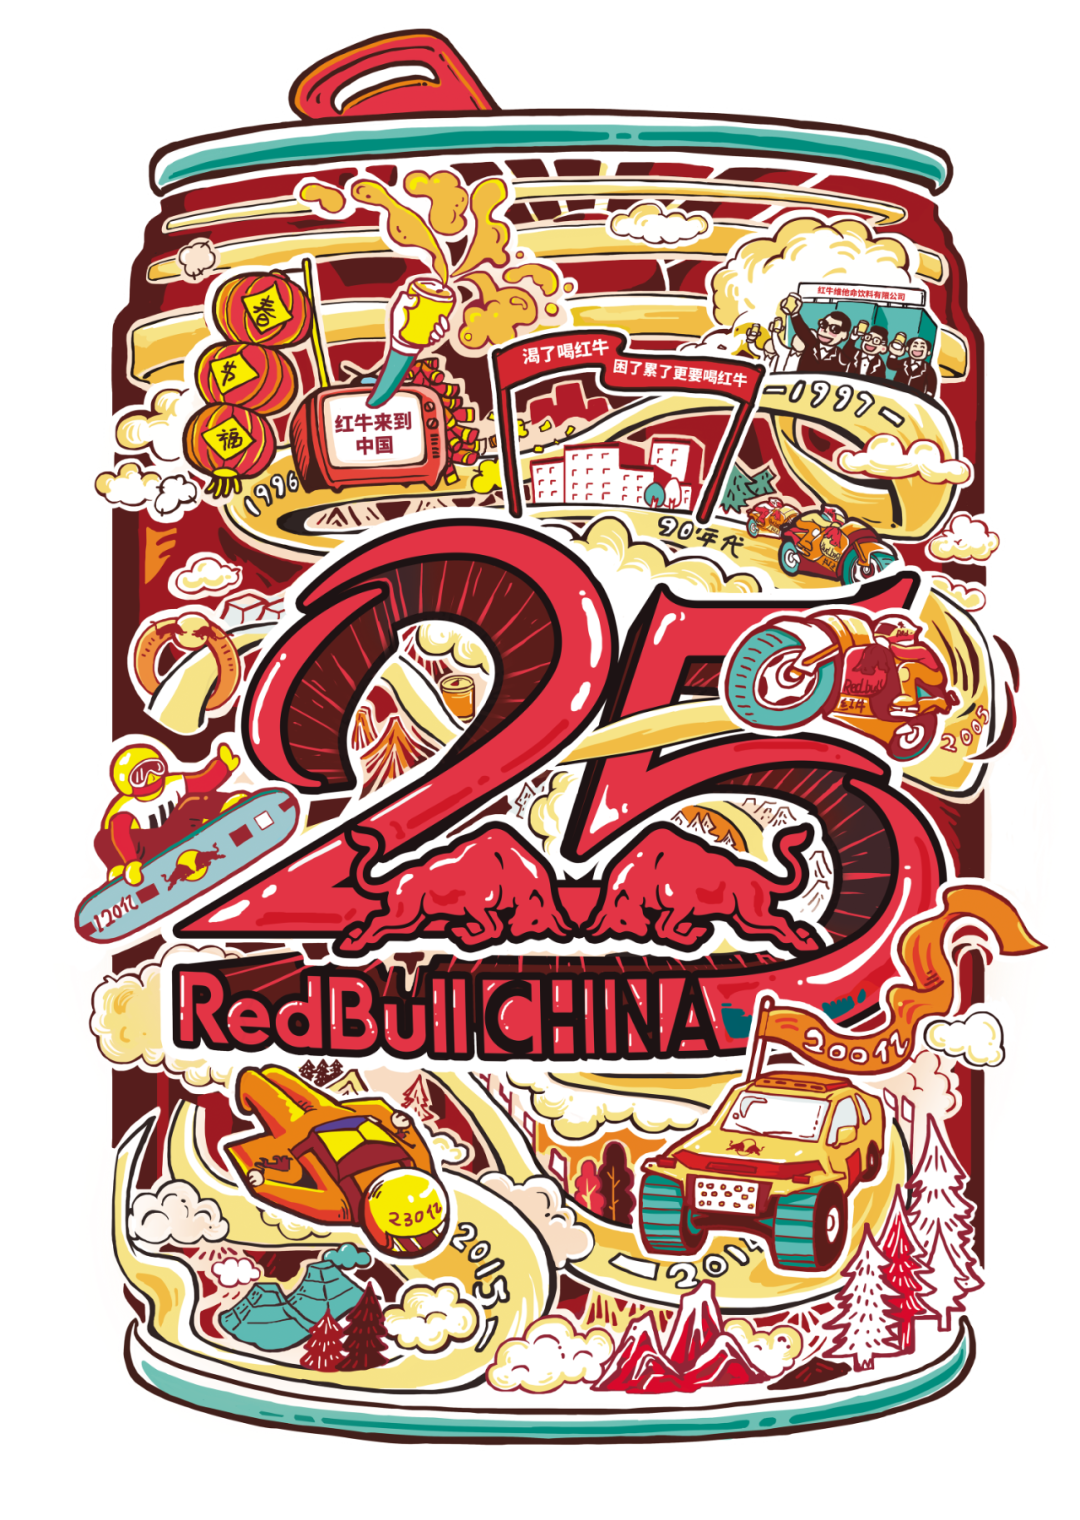 手绘里程碑式的事件组图搭配25周年庆logo组成红牛金罐形象更具意义和